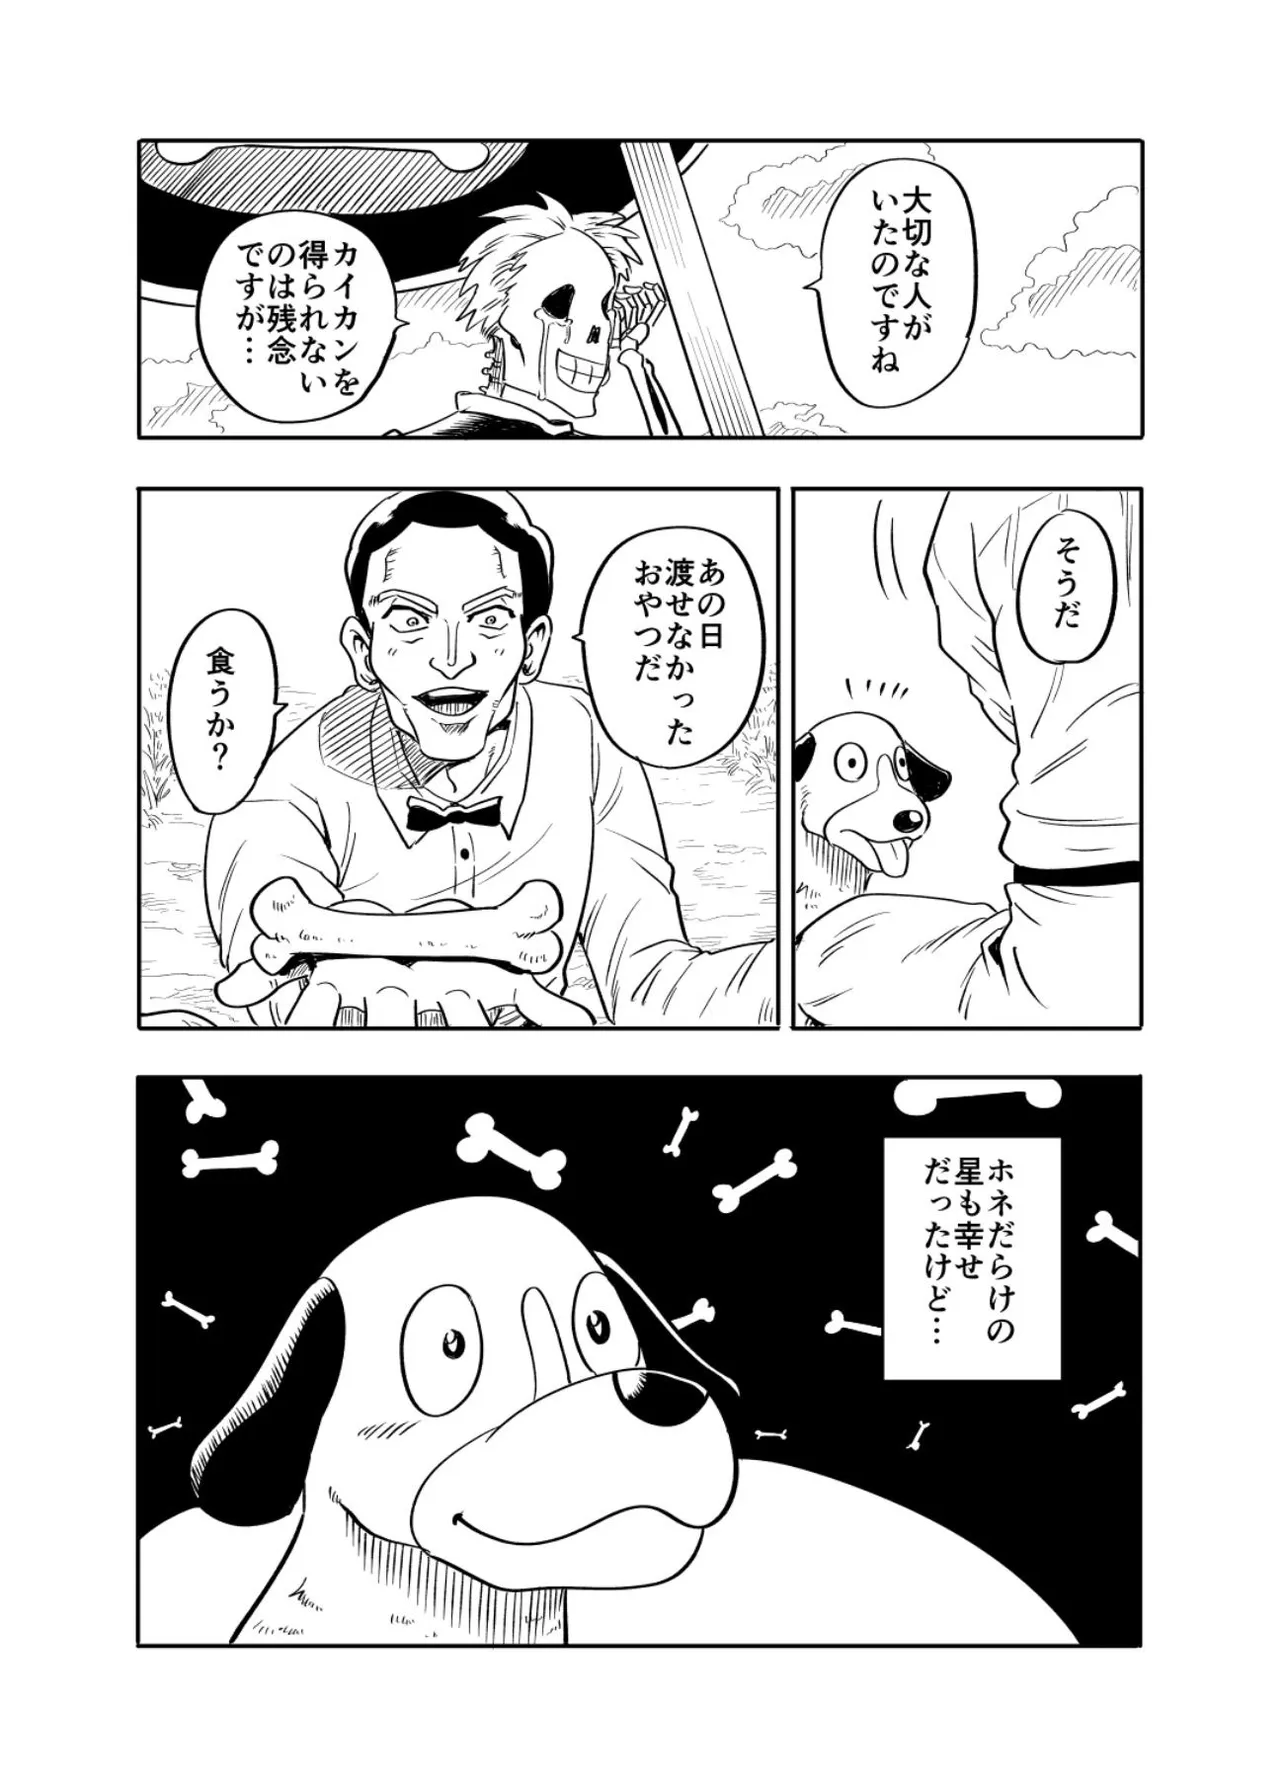 『ライカ犬が幸せになる話』(35／36)